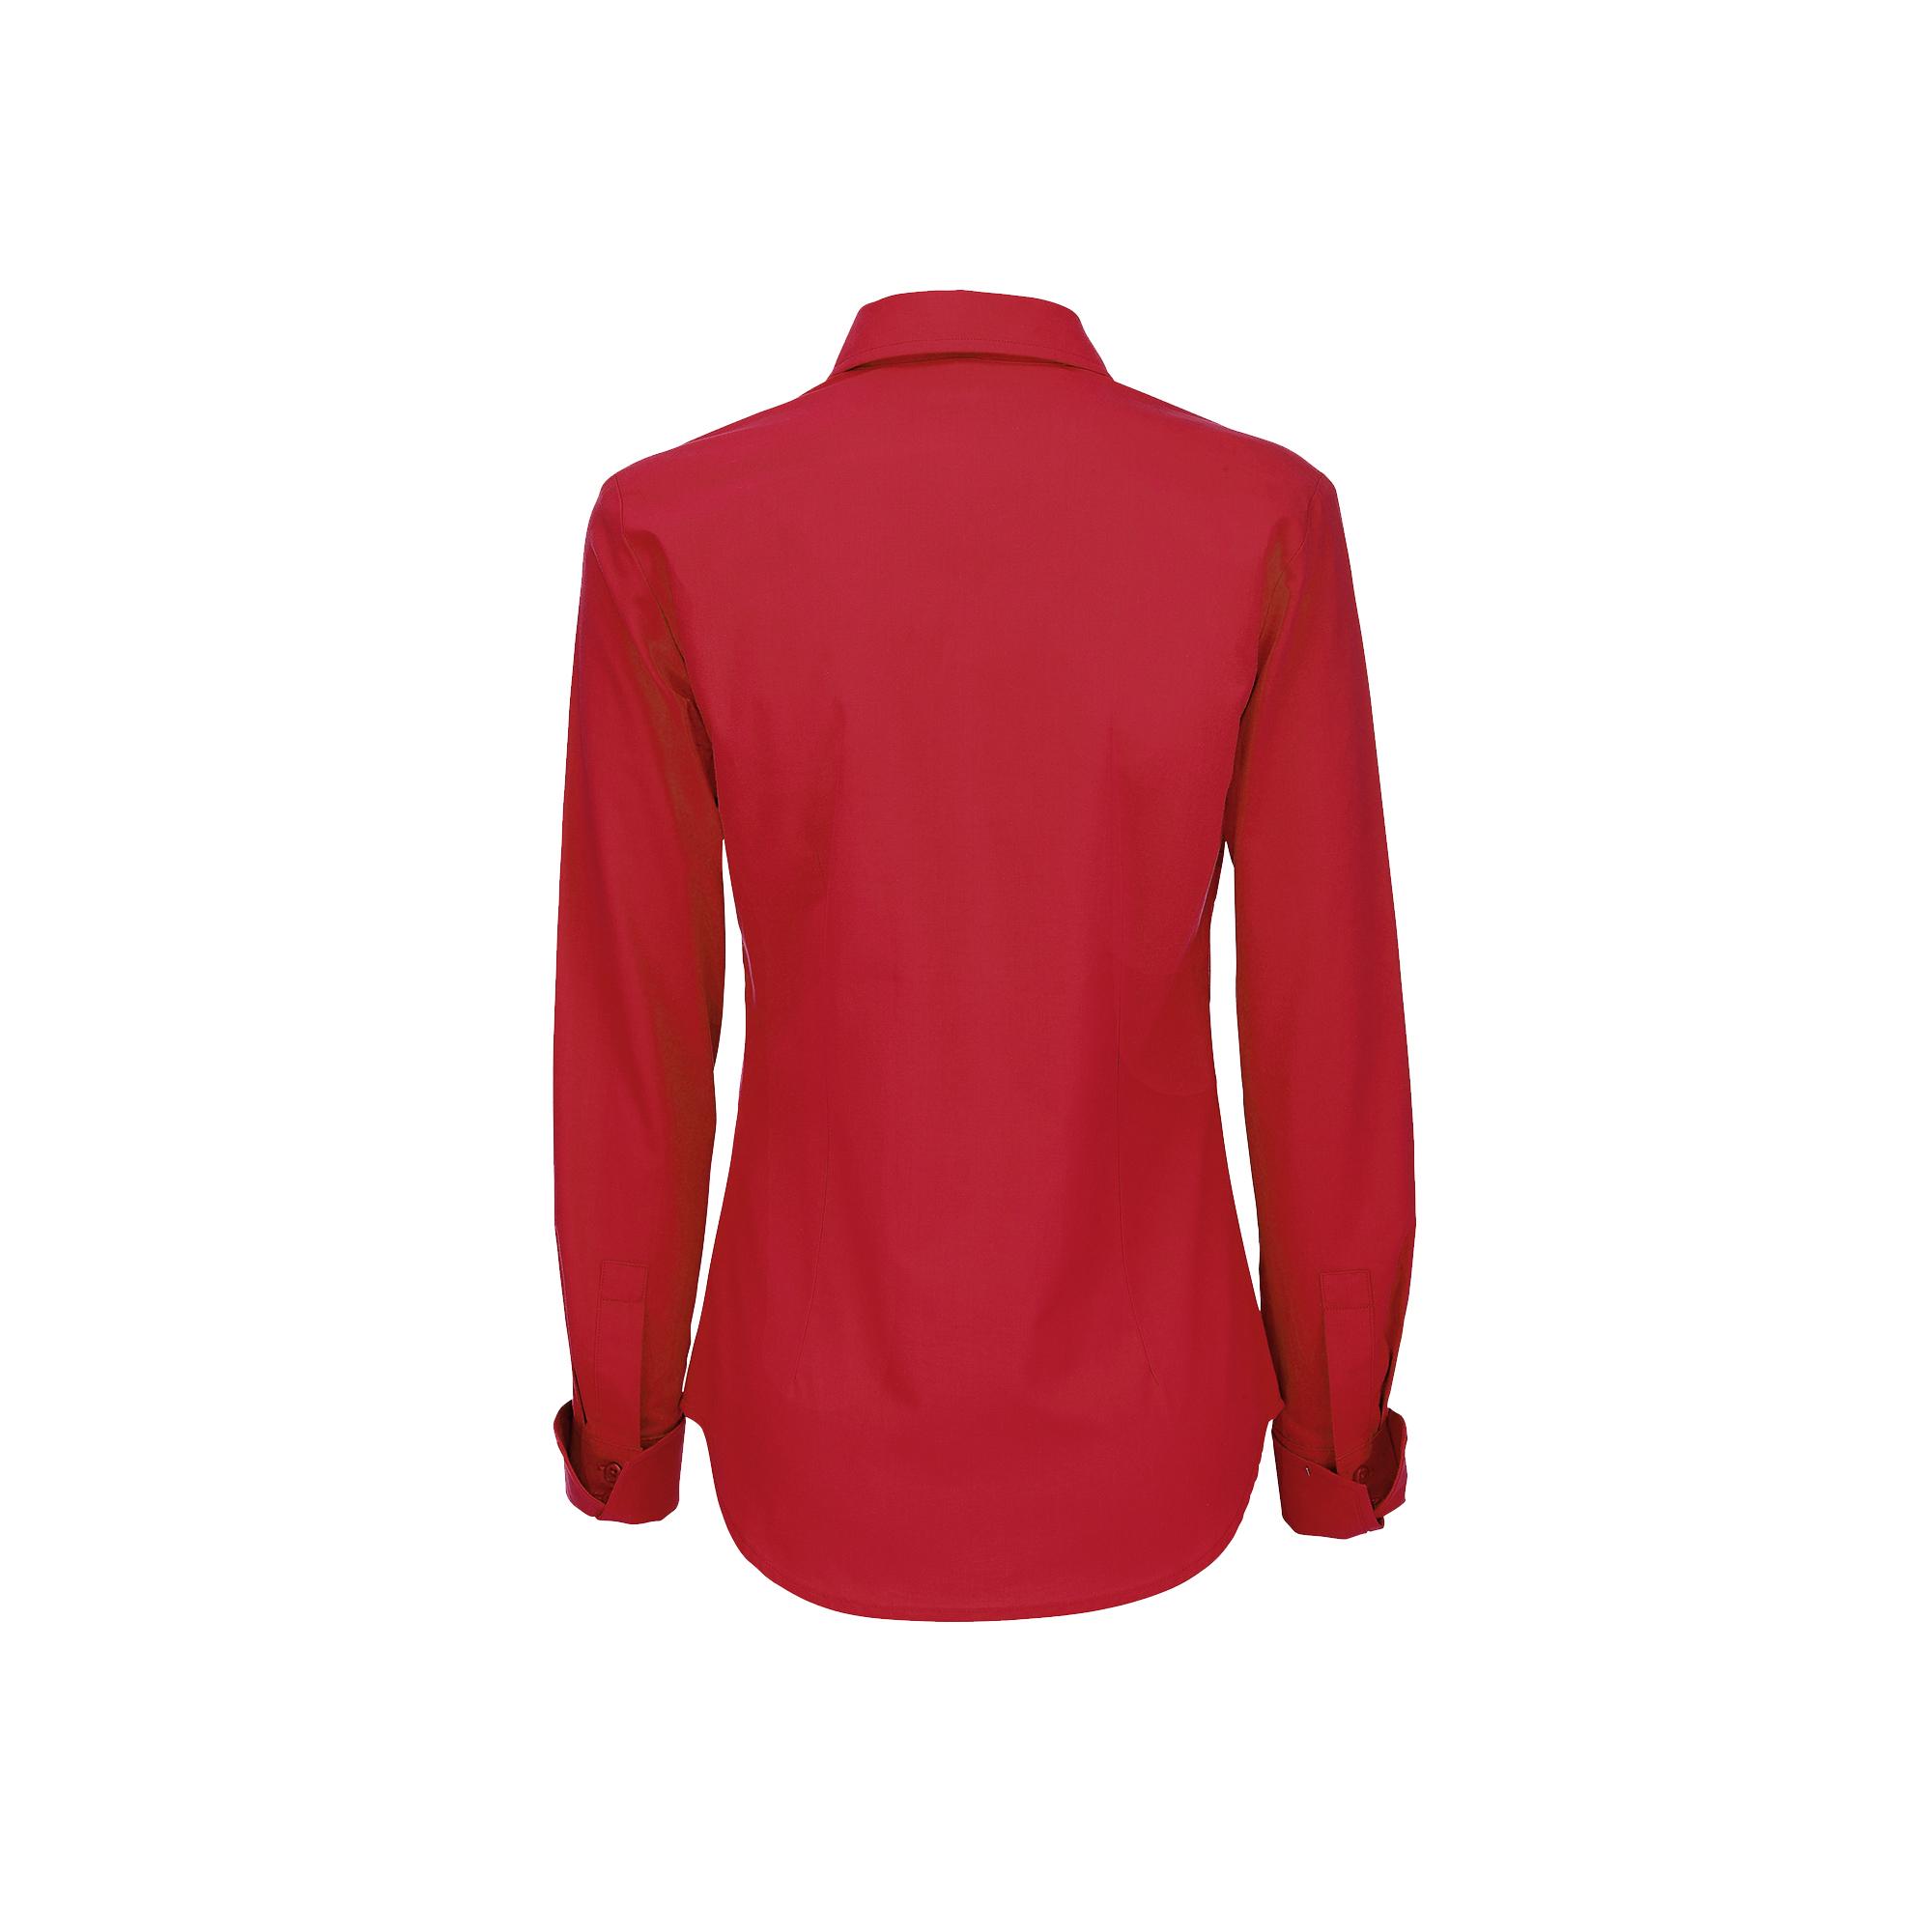 Рубашка женская с длинным рукавом Heritage LSL/women, цвет темно-красный, фото 2